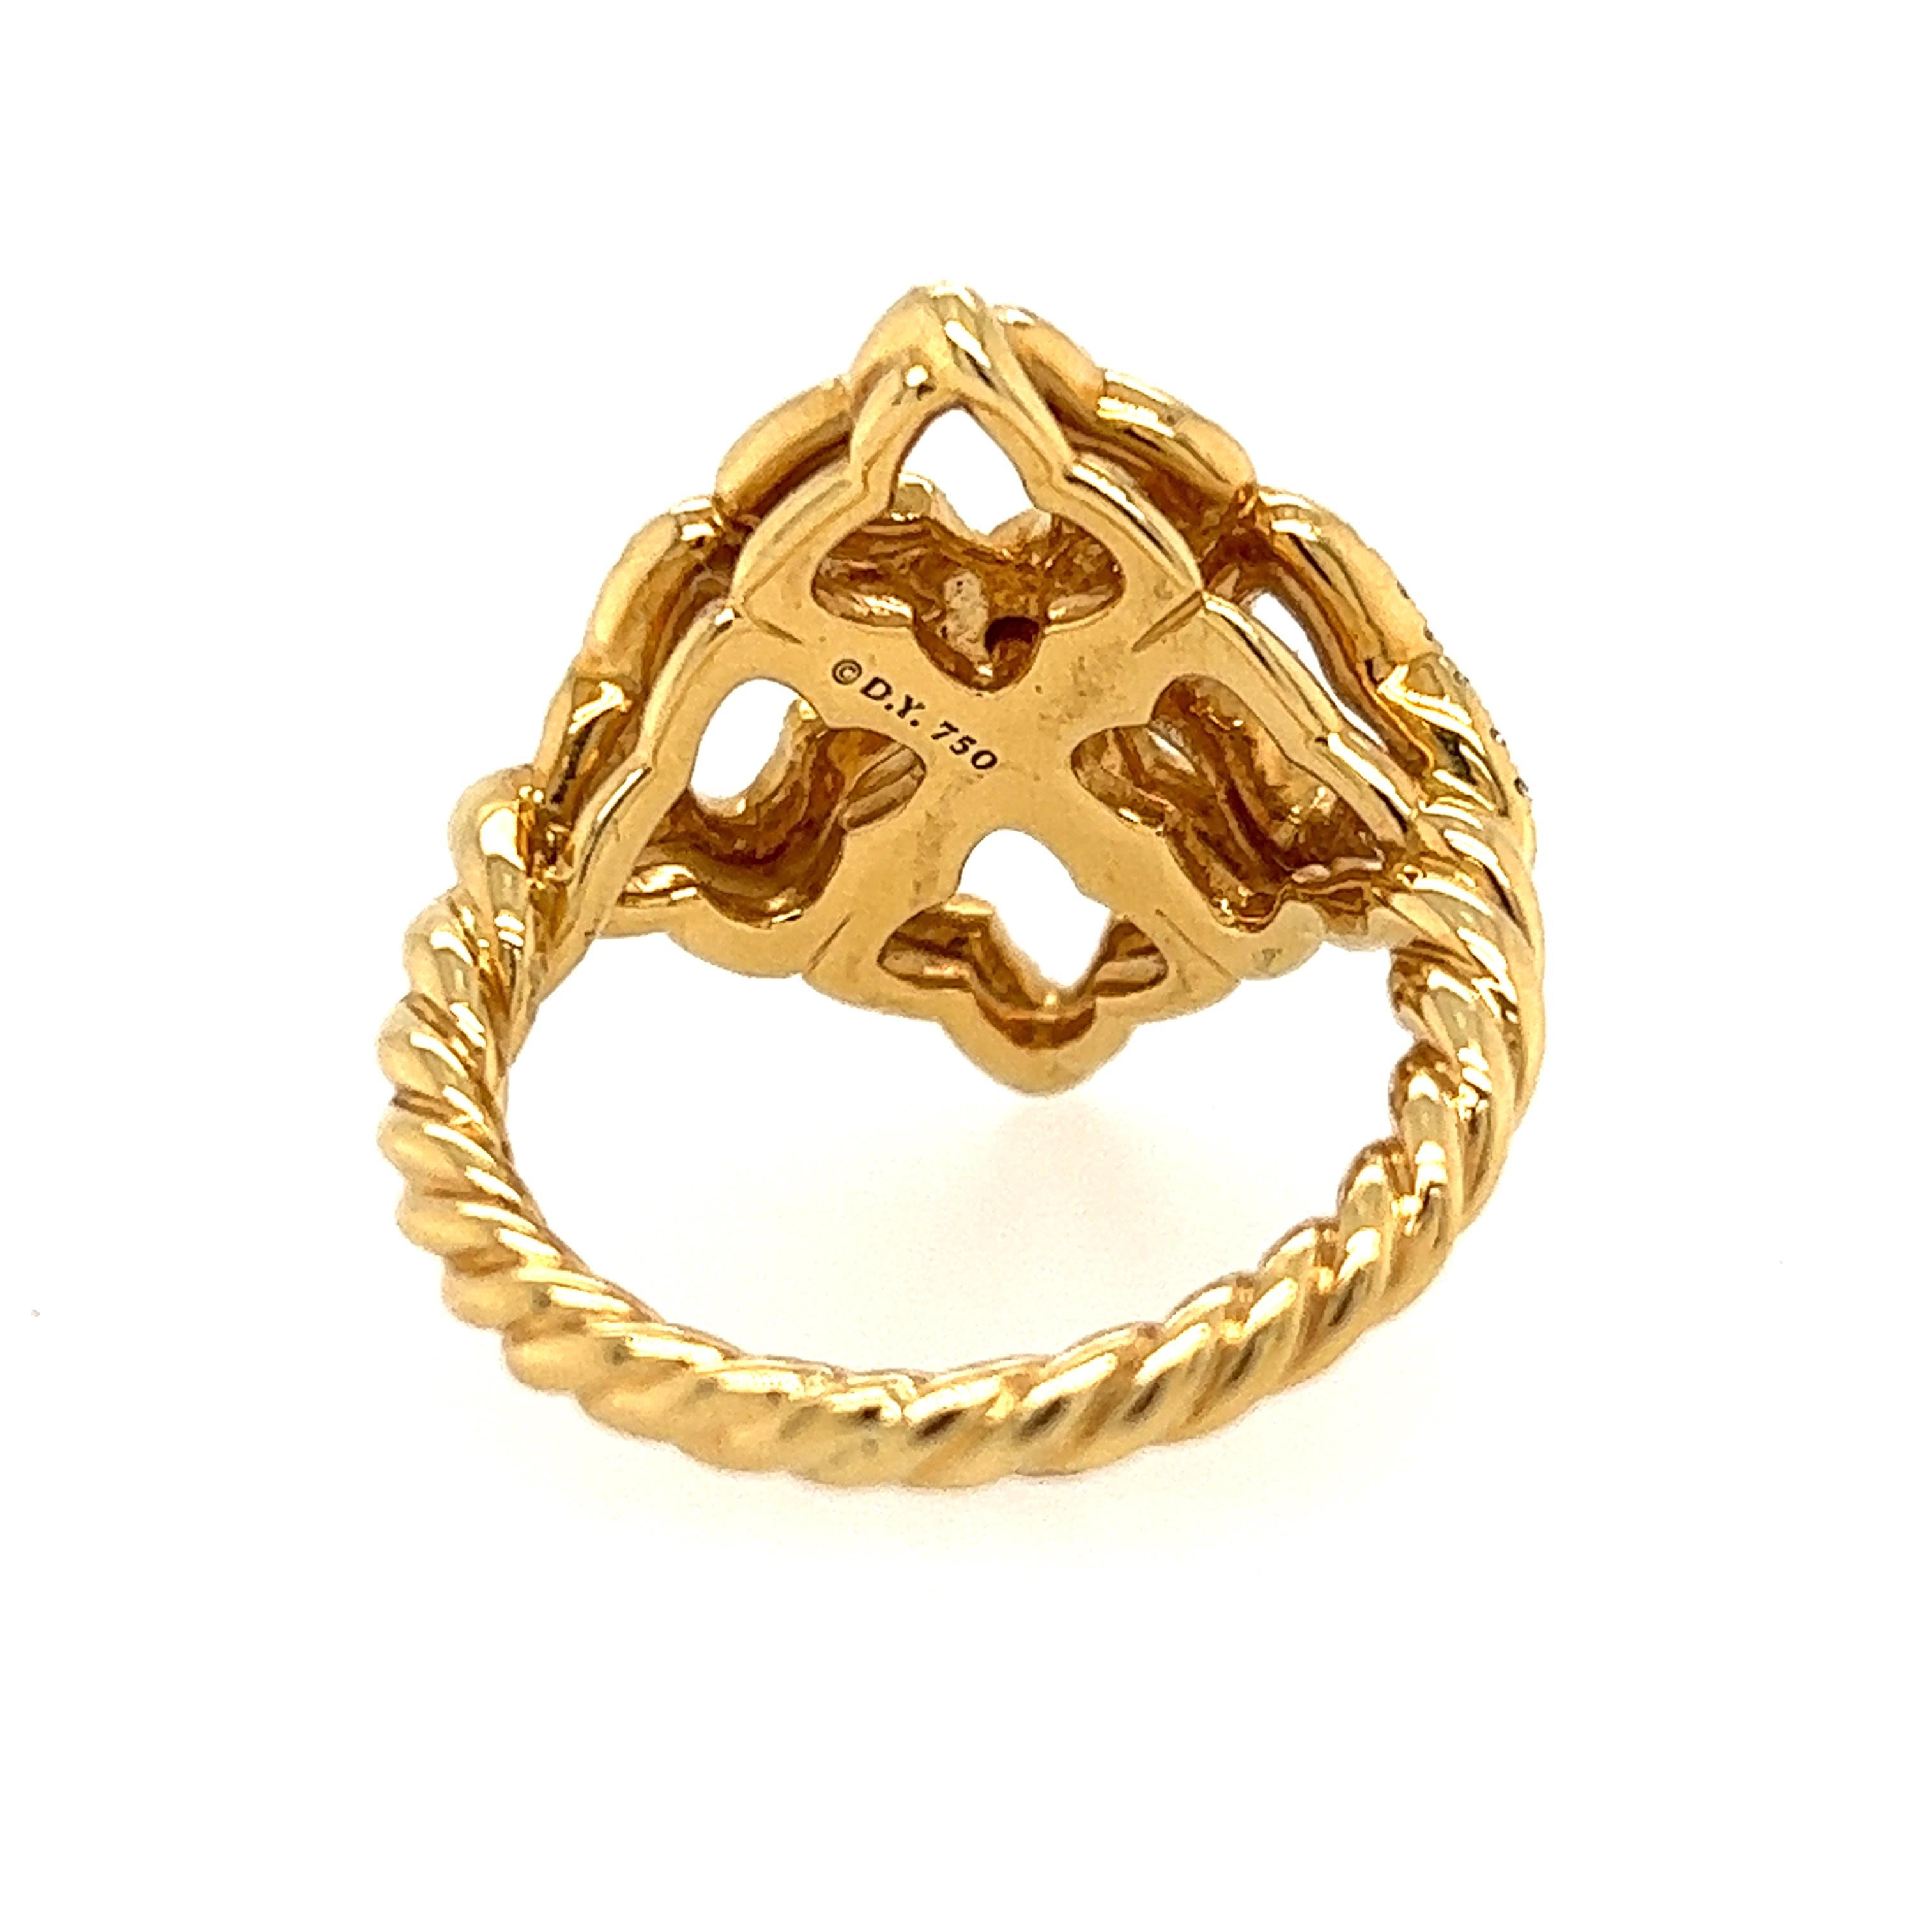 David Yurman Diamond Quatrefoil Ring in 18 Karat Gold 1